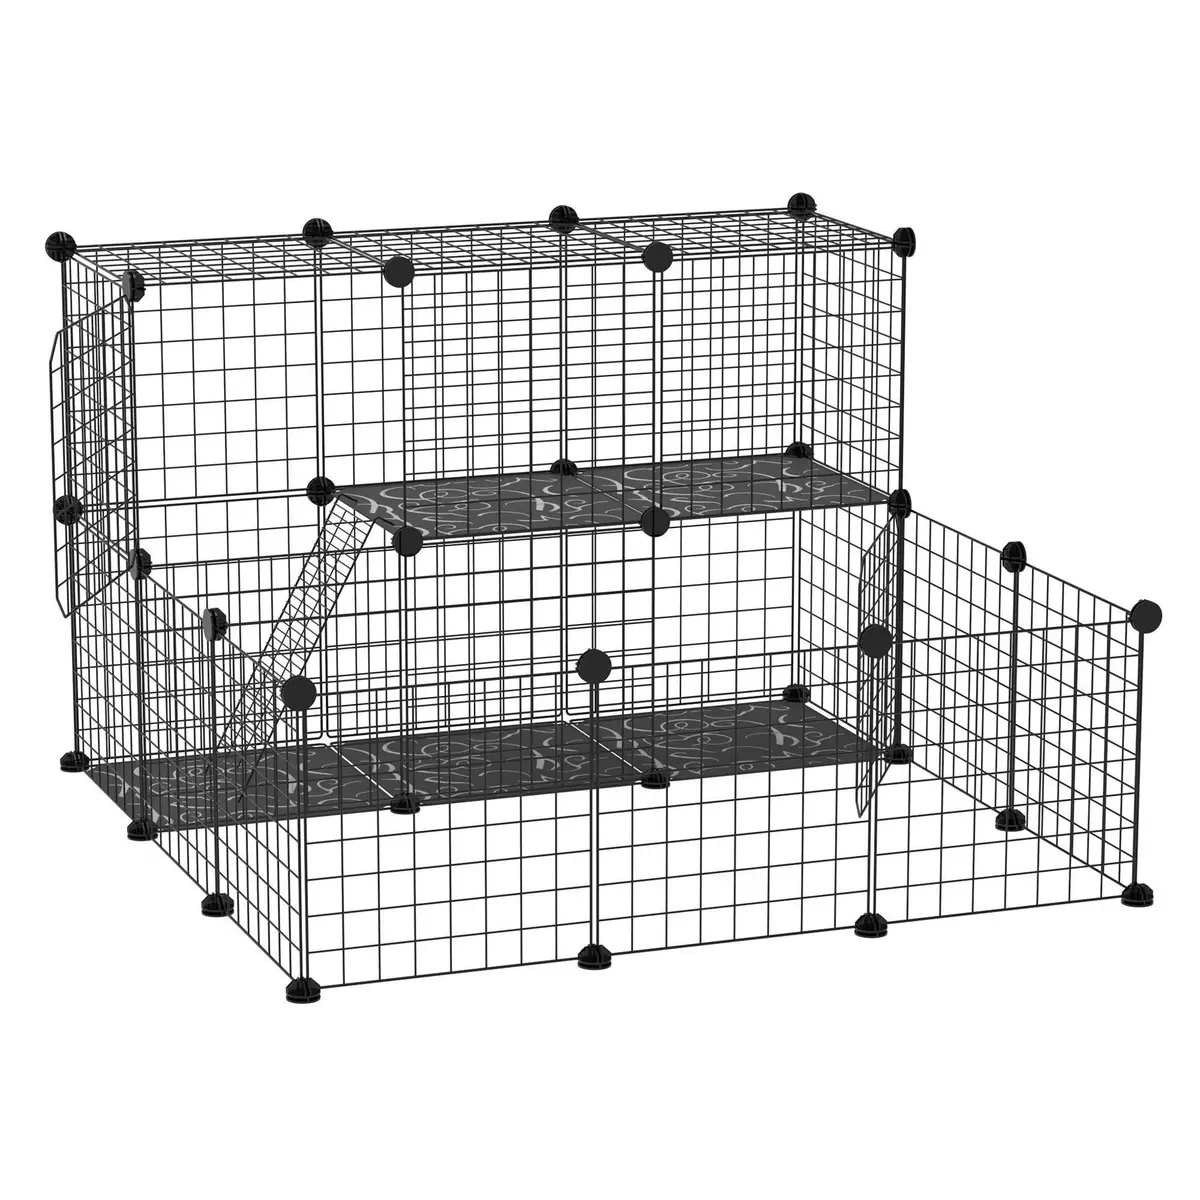 PAWHUT Cage parc enclos rongeurs modulable dim. L 105 x l 105 x H 70 cm 2 niveaux 2 portes rampe résine PP fil métallique noir